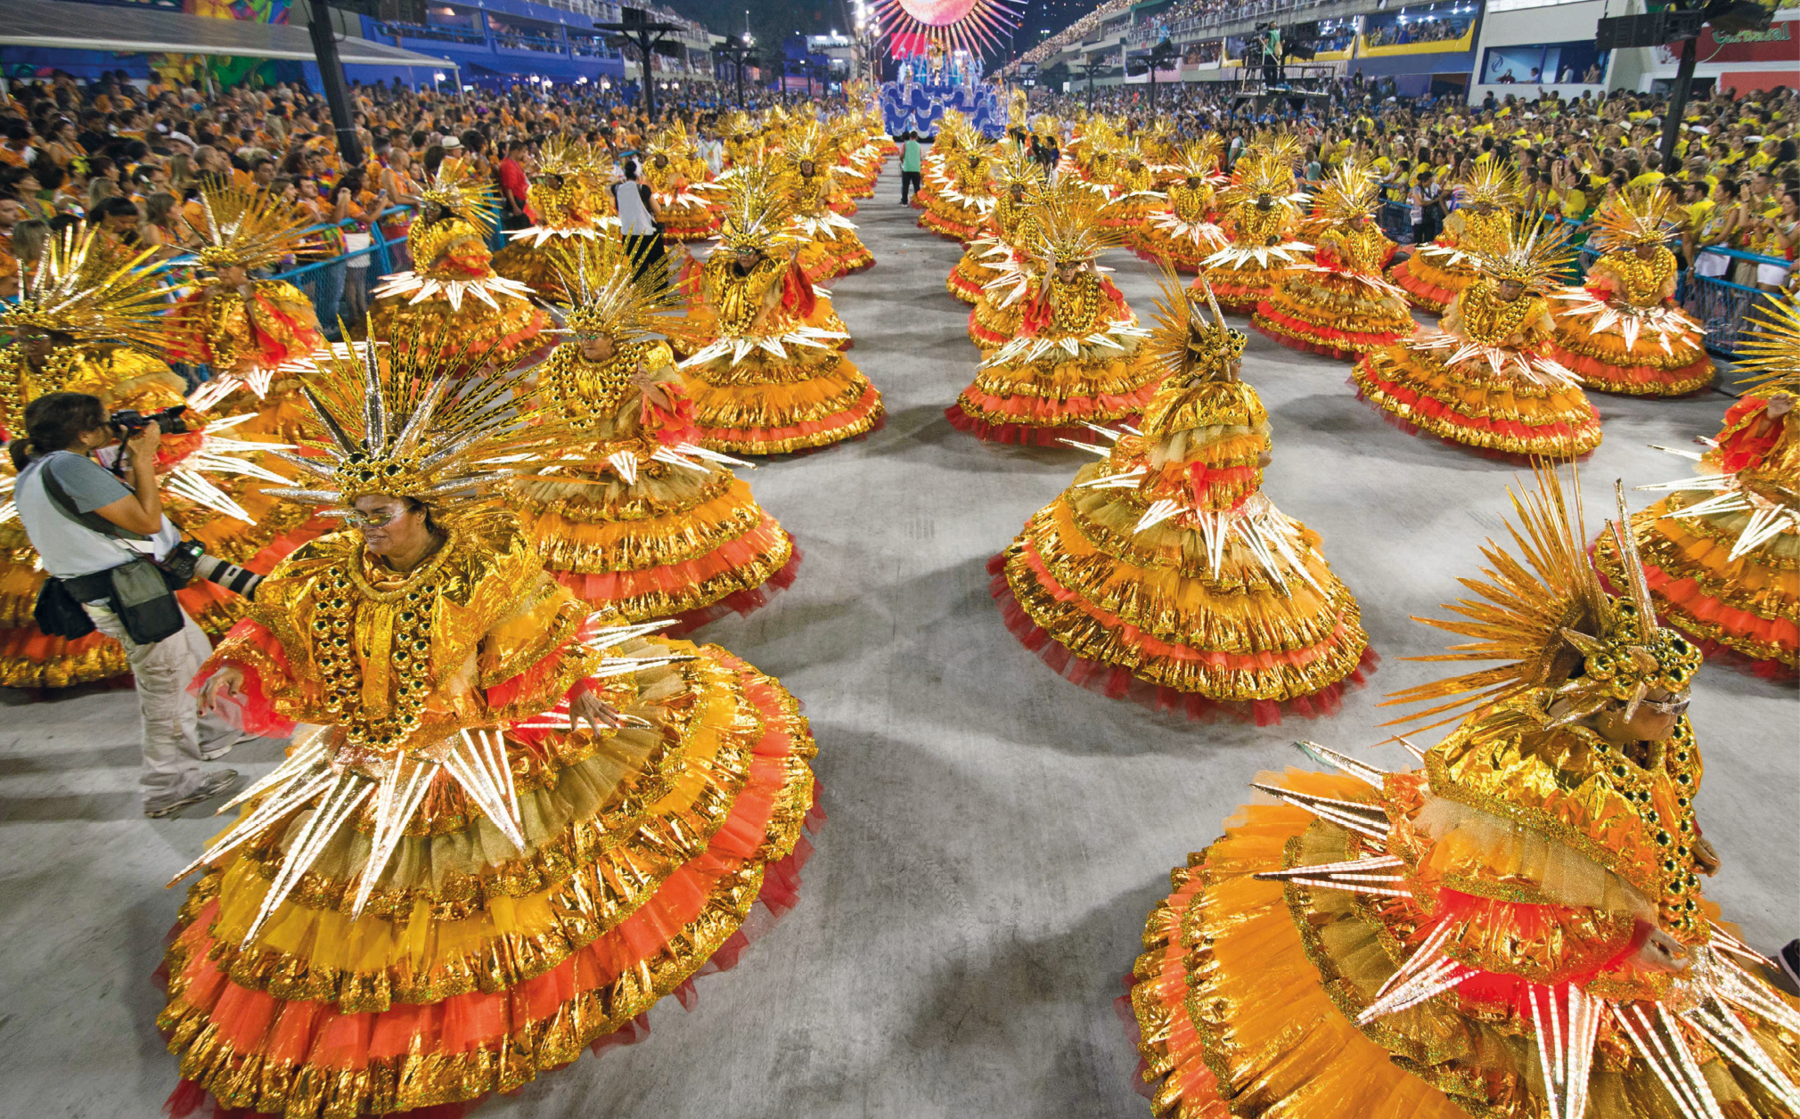 Fotografia. Vista de desfile de escola de samba. Em primeiro plano, mulheres vestidas de baianas, com fantasias luxuosas na cor laranja com detalhes dourados e plumagens. Ao fundo, o público nas arquibancadas. À esquerda, um fotógrafo está na ala documentando o evento.